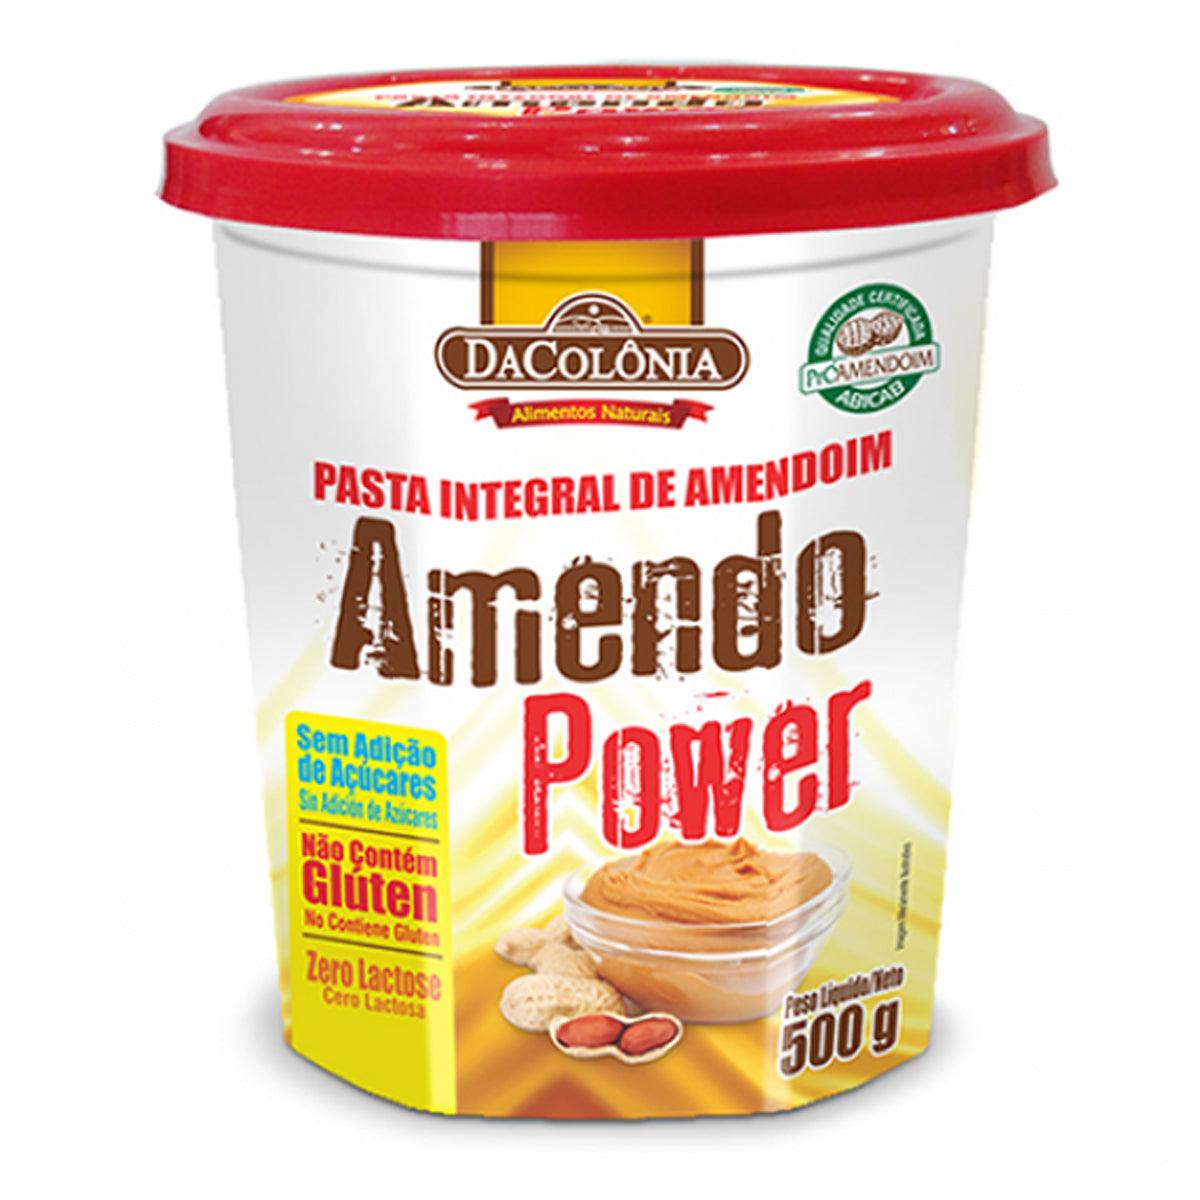 Pasta Integral de Amendoin Da Colonia 500g